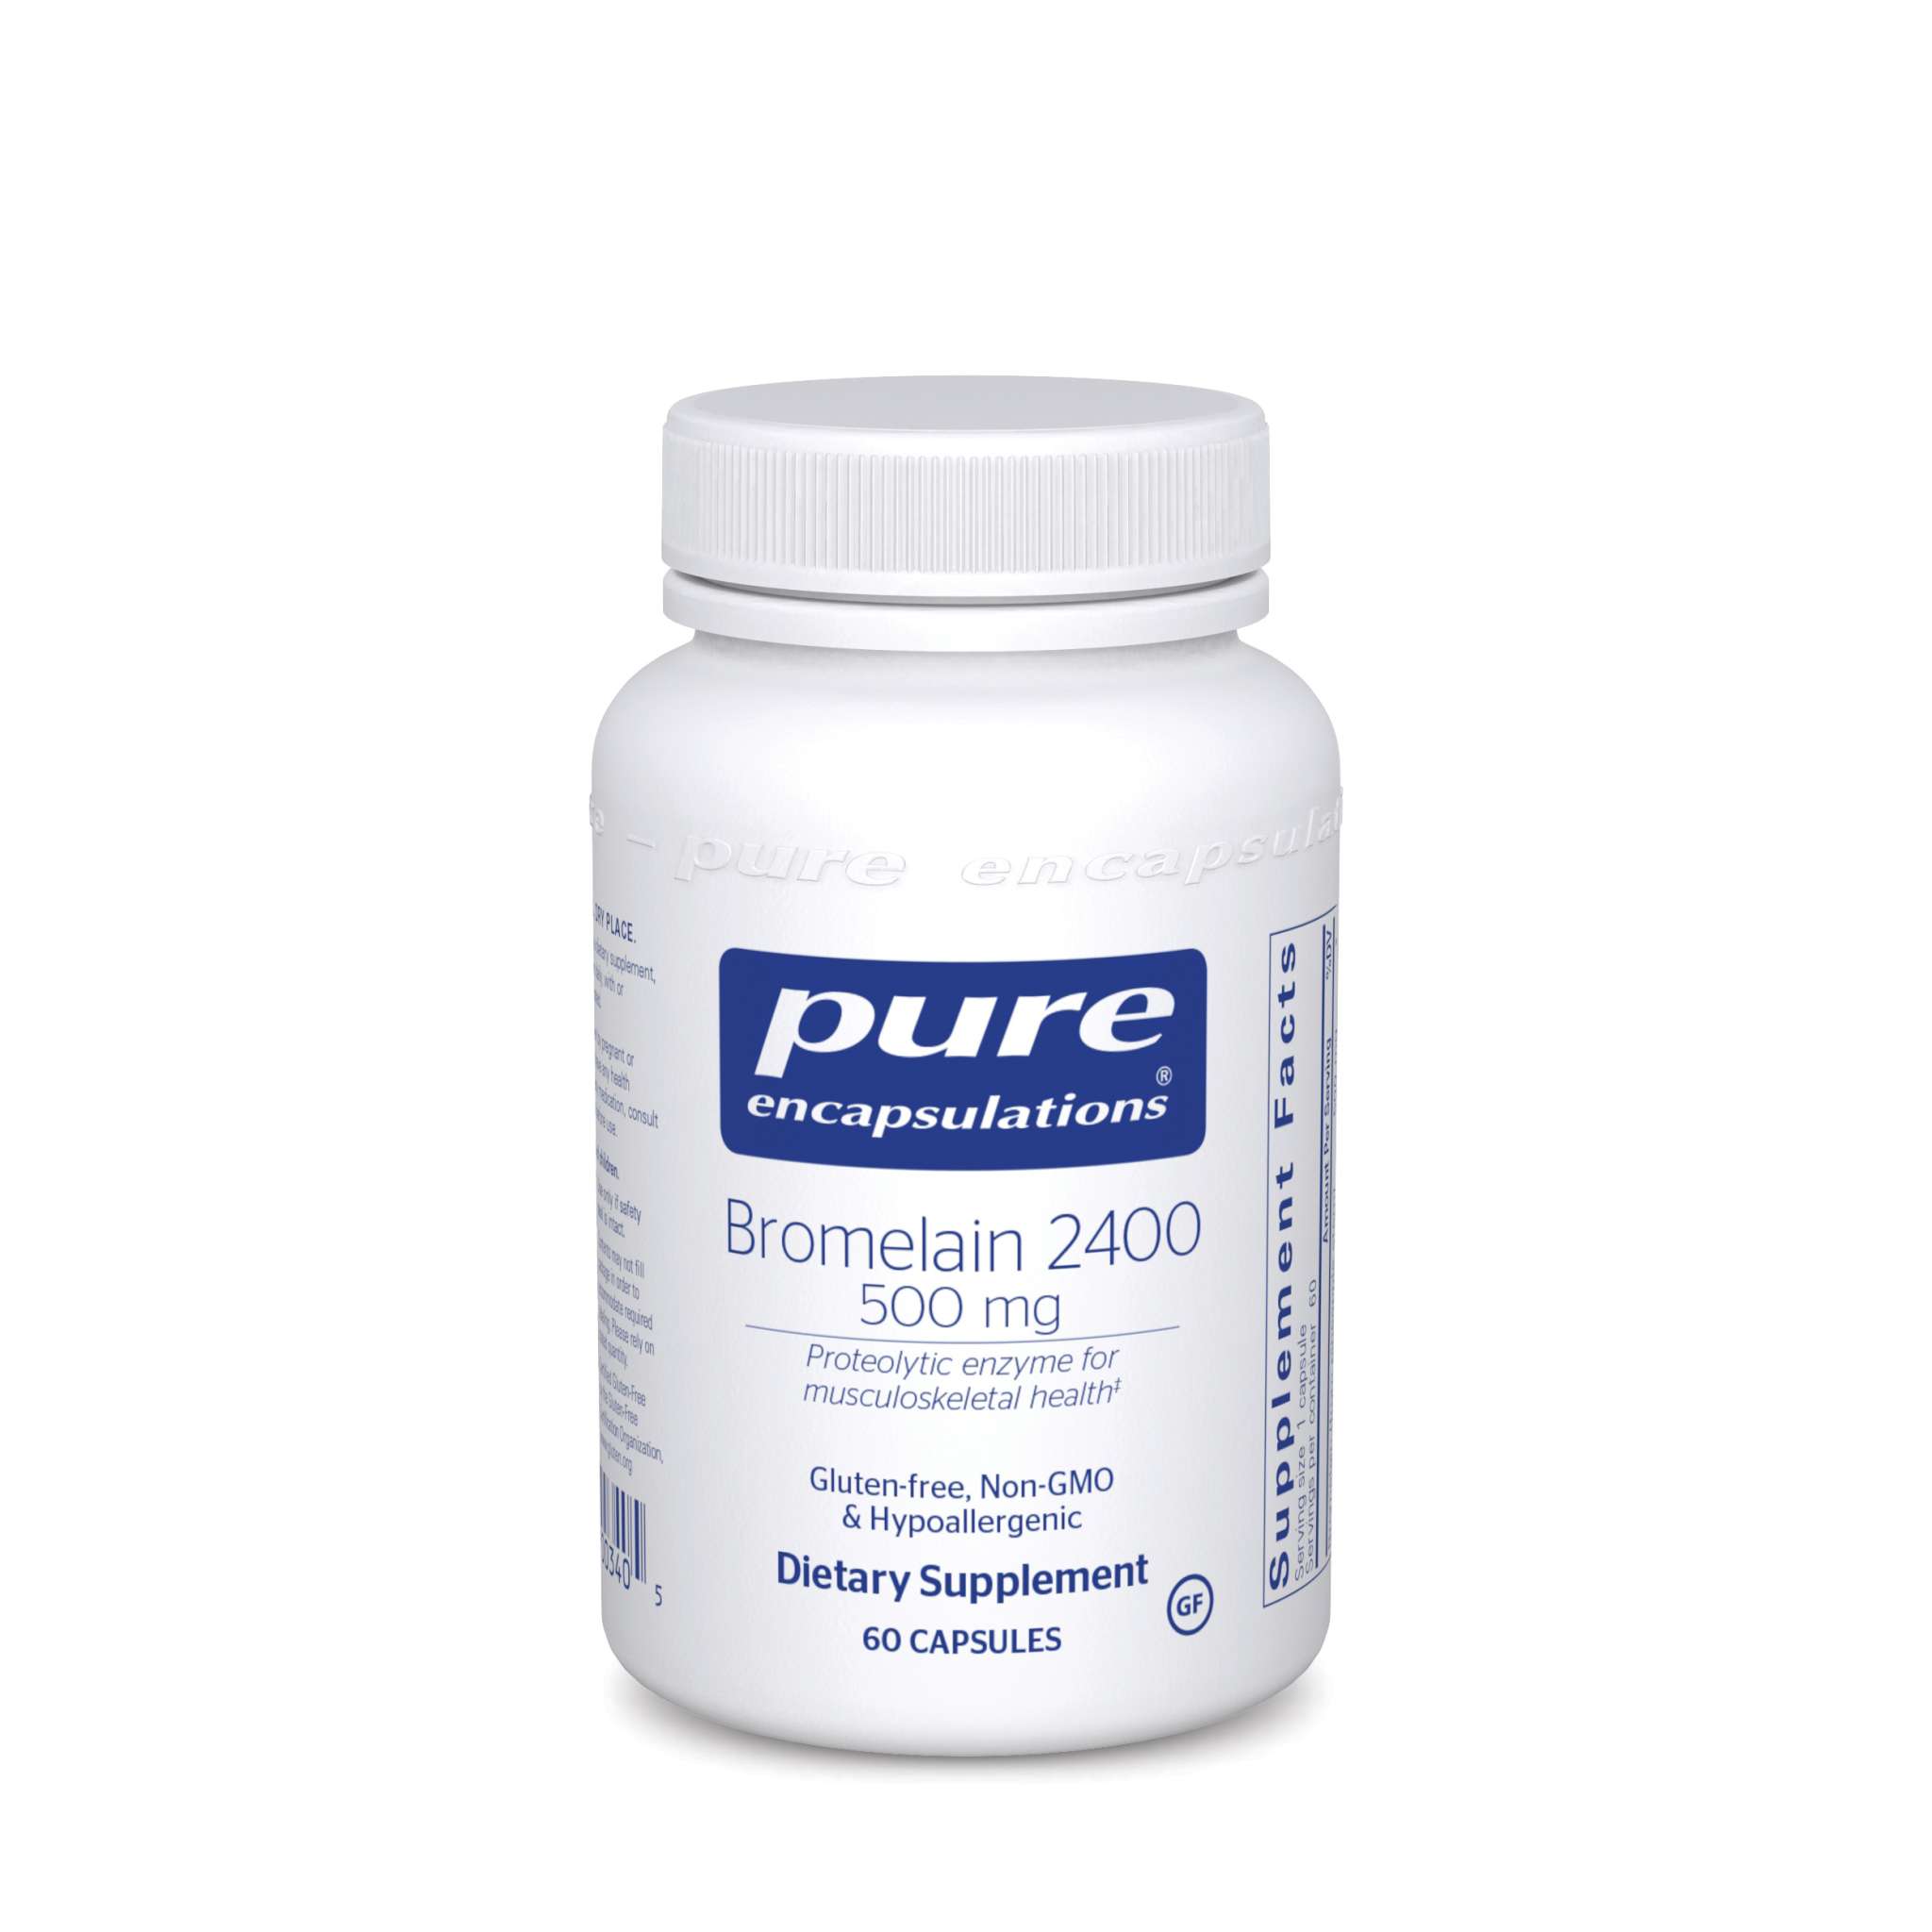 Pure Encapsulations - Bromelain 2400 500